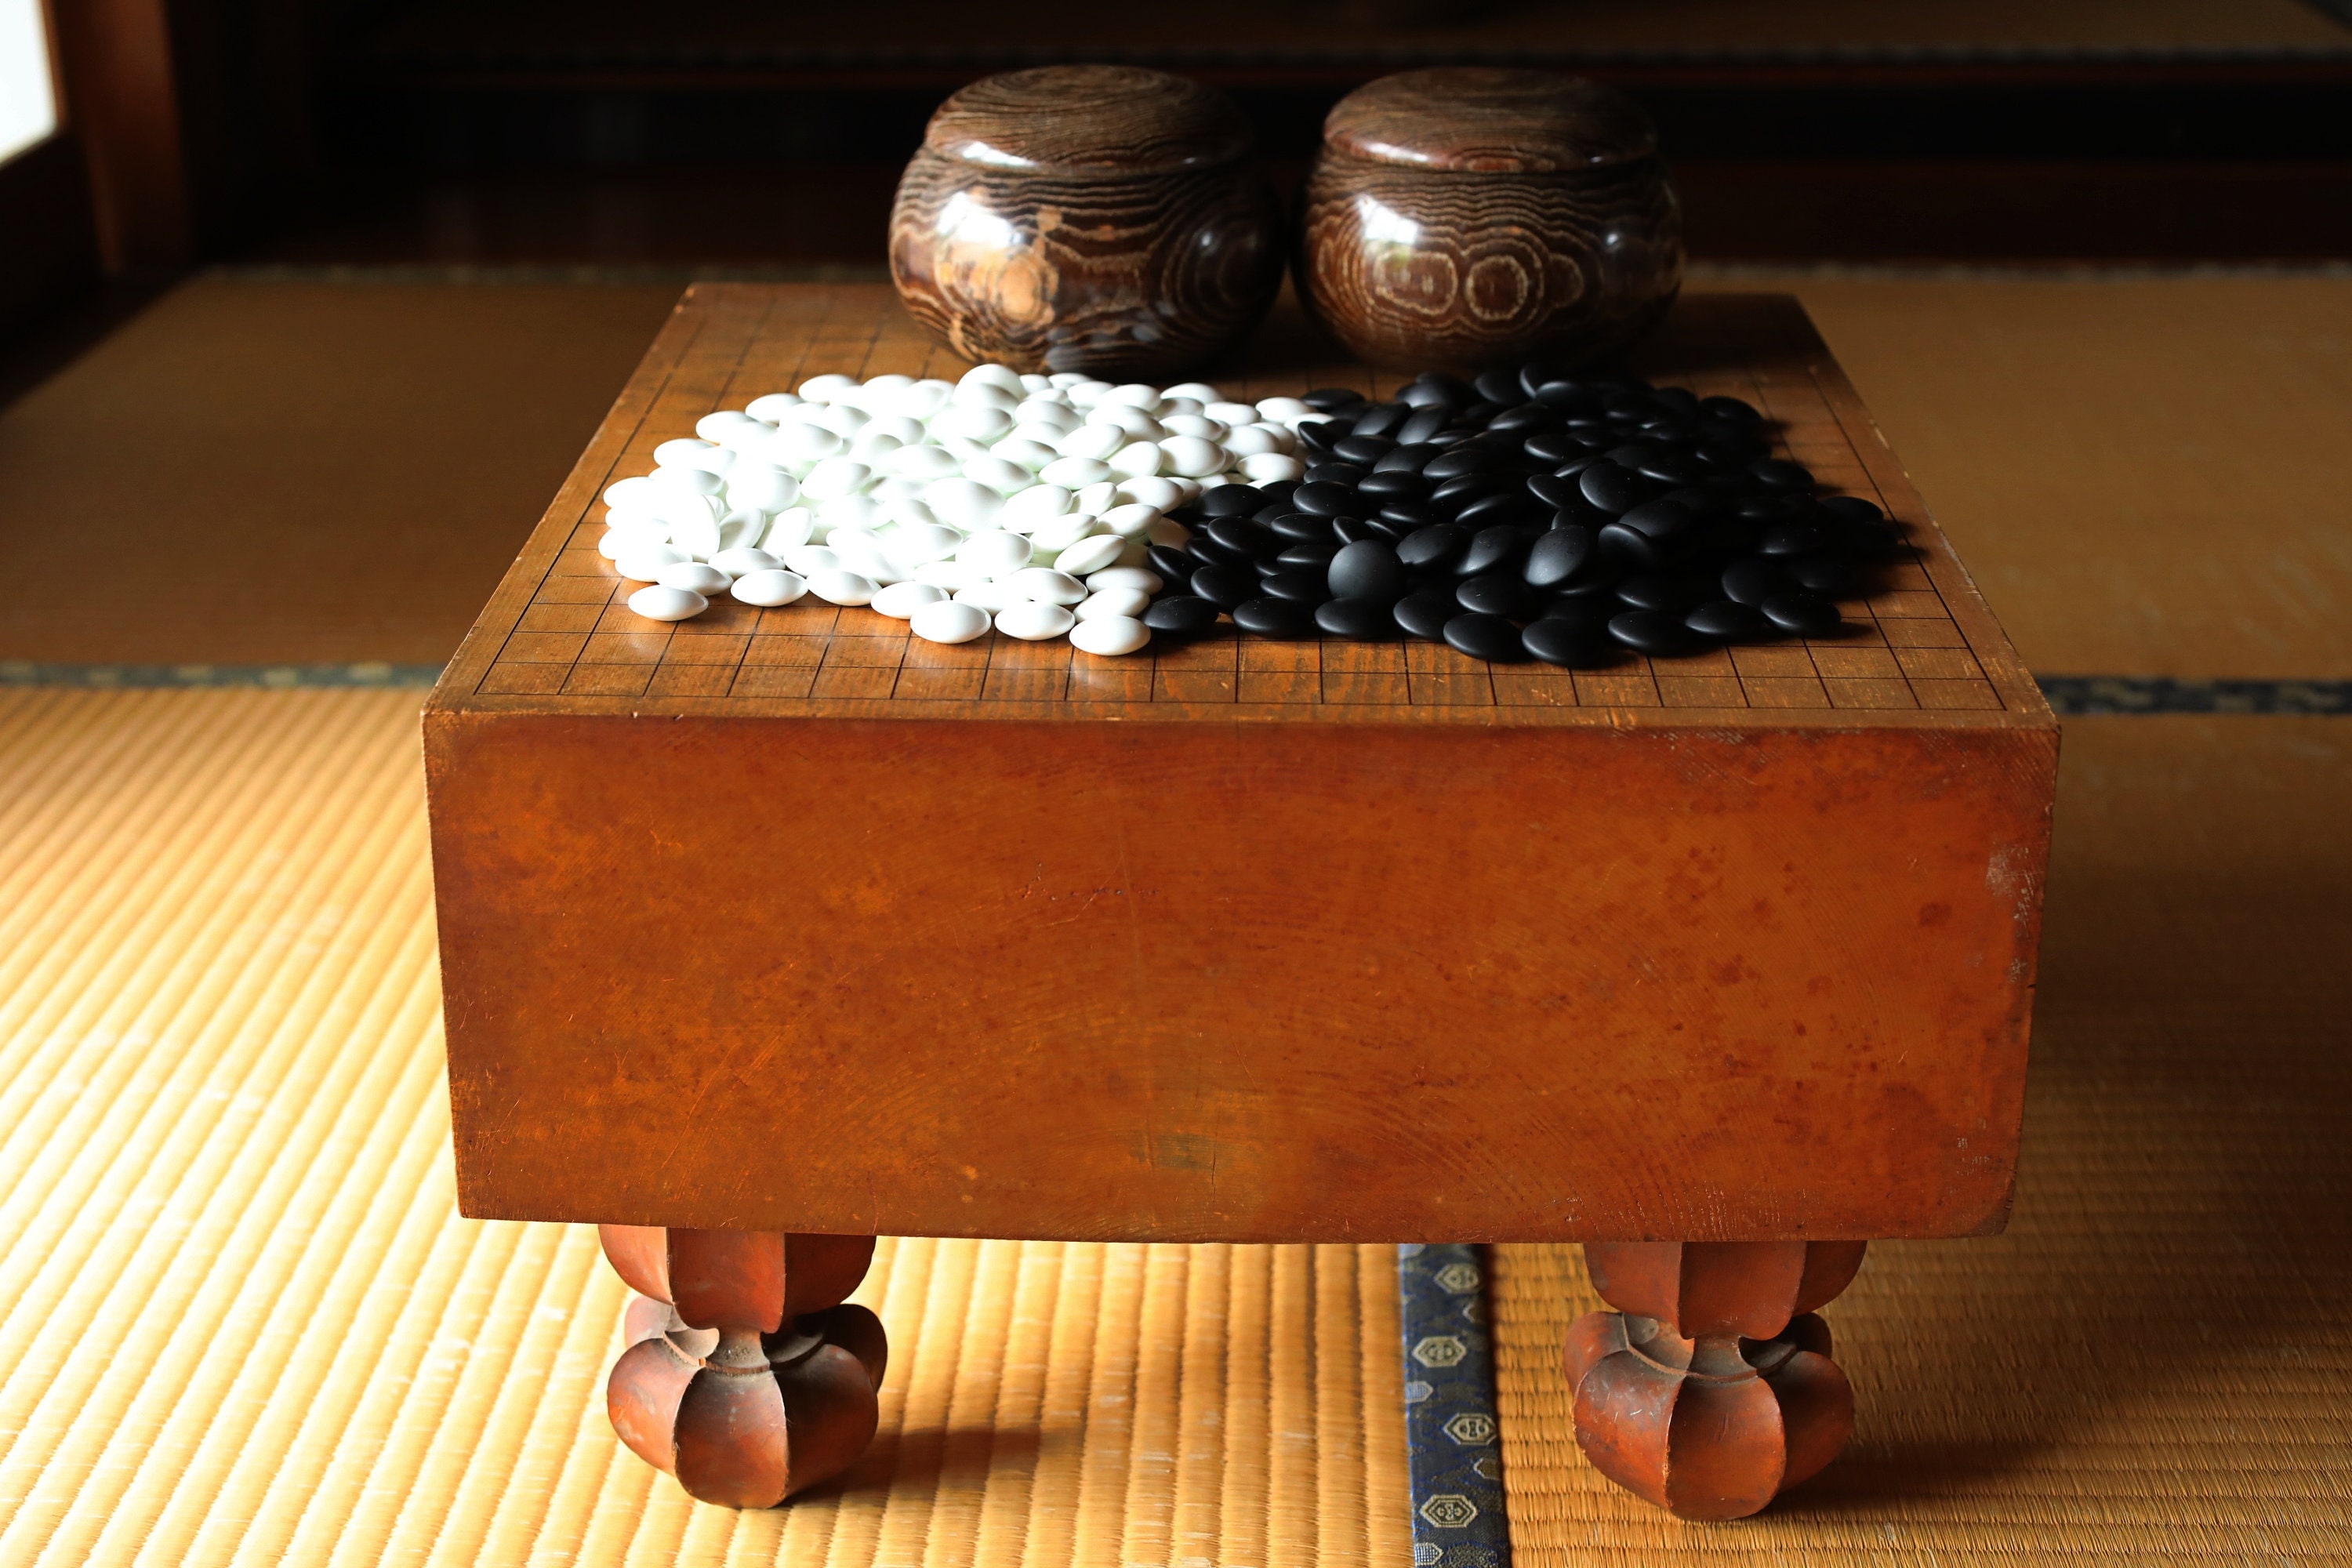 Goban stones Etsy 日本